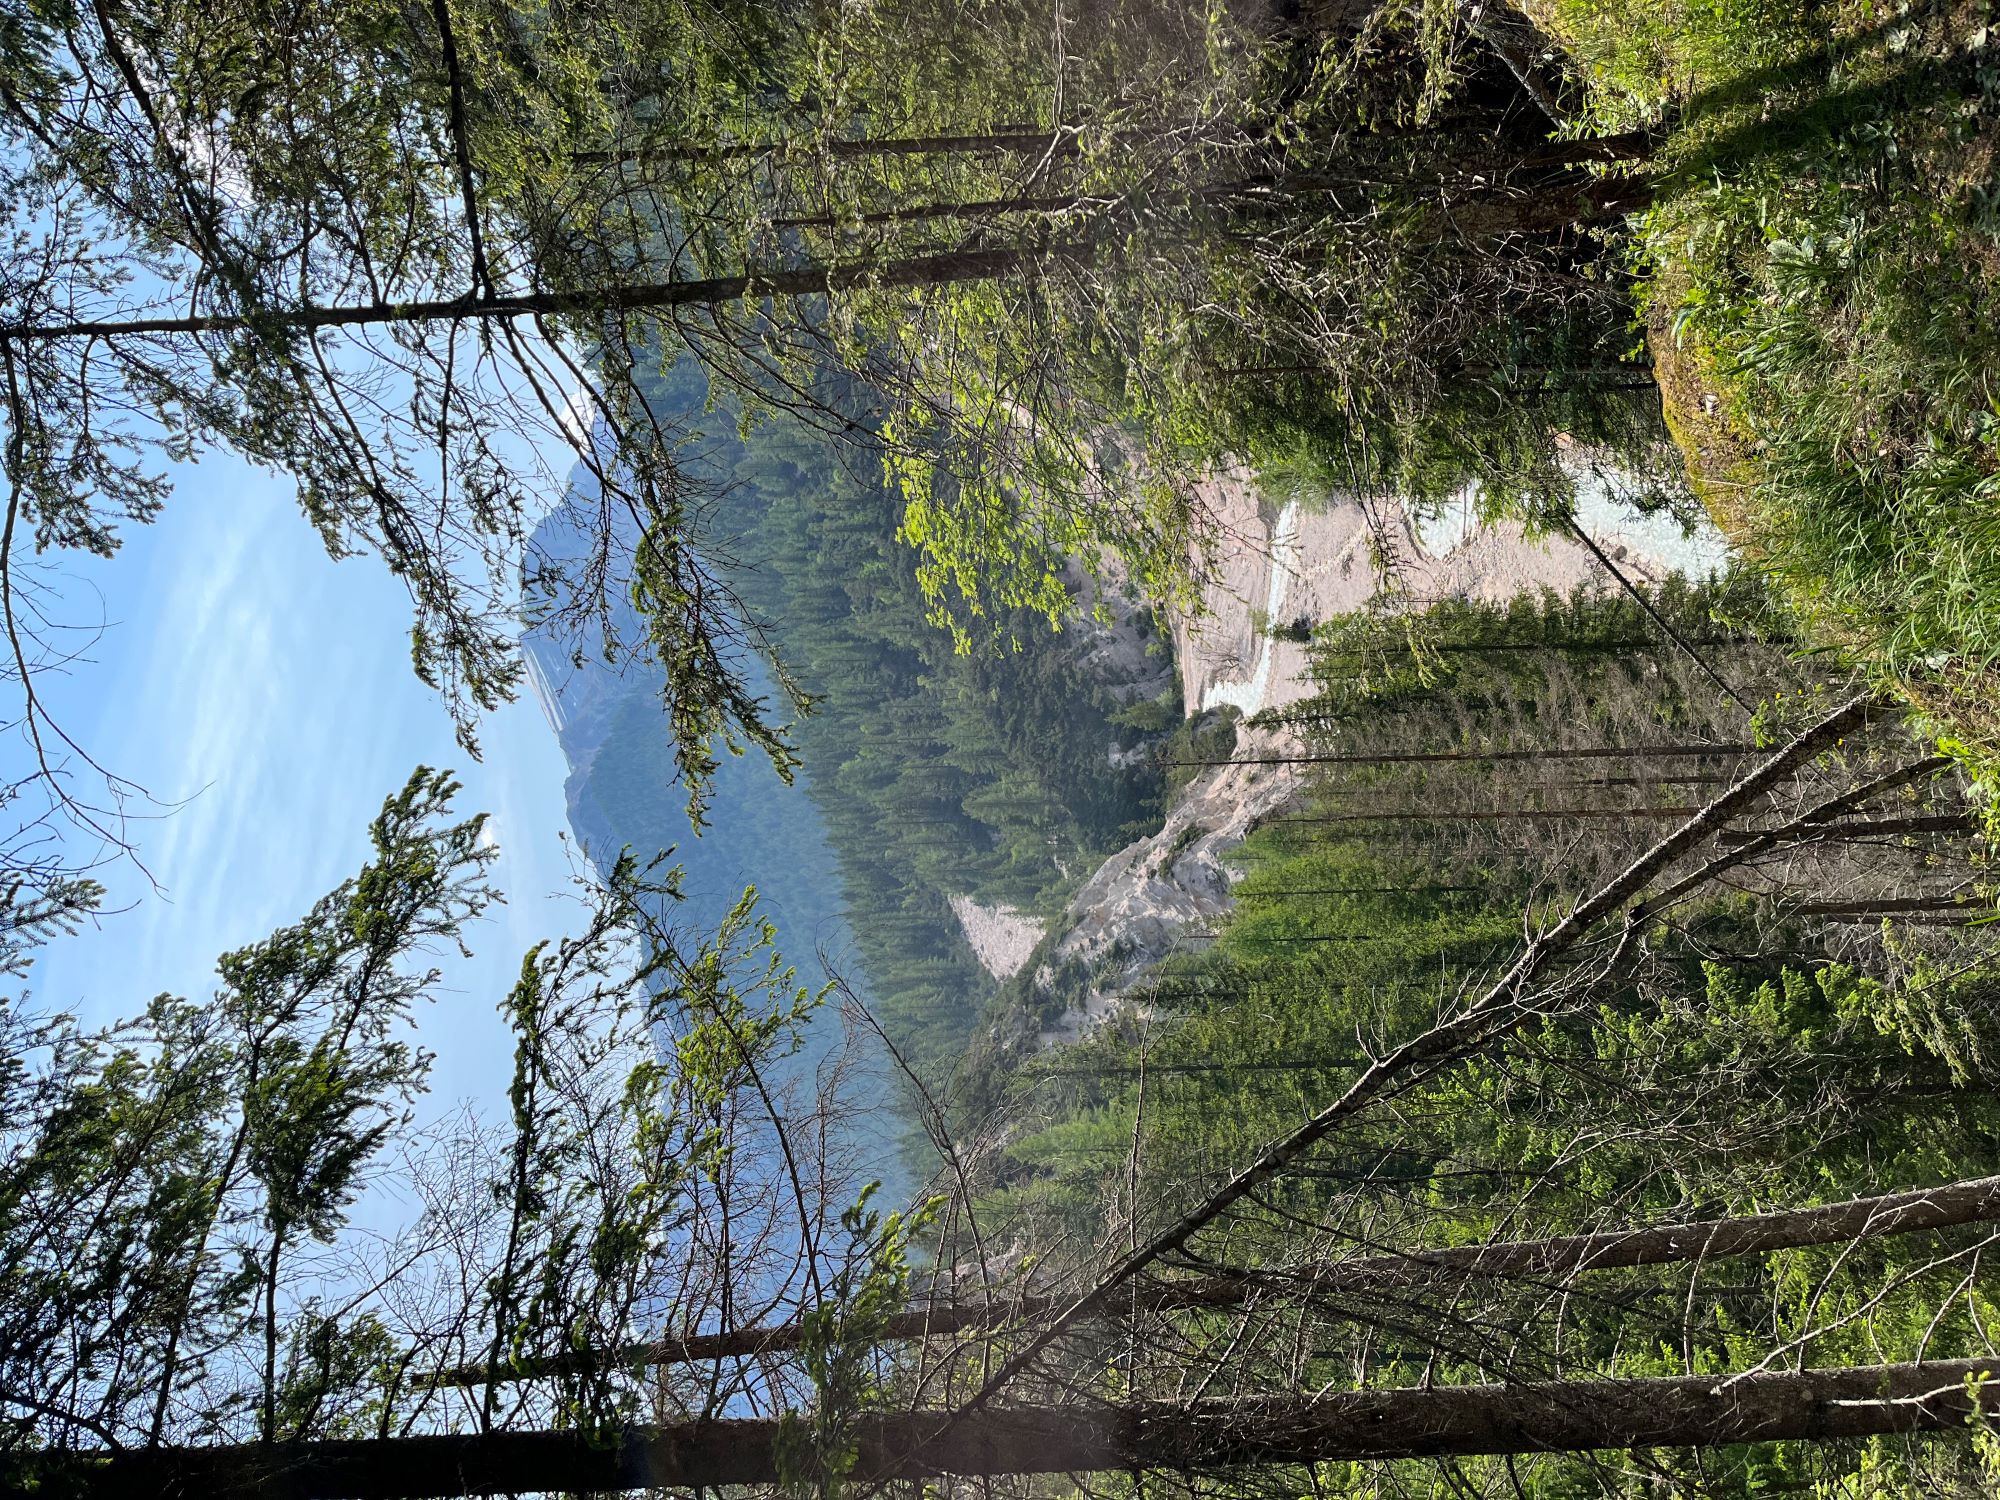 Blicks in eine Schlucht mit den fesligen Bergen im Hintergrund (Dolomiten)